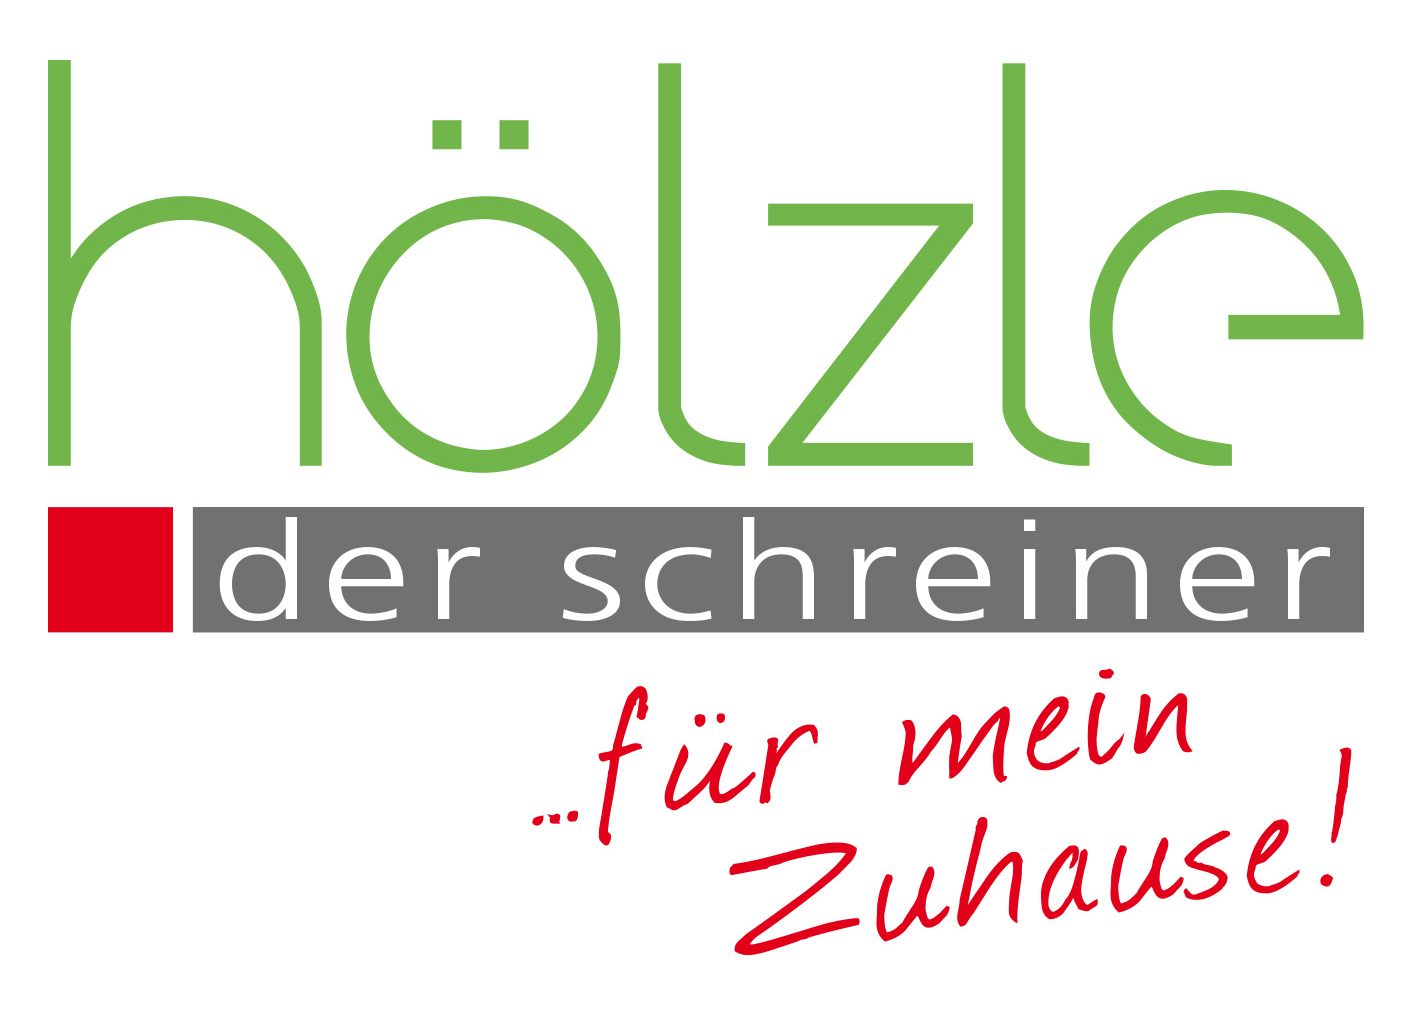 Schreinerei Hölzle Logo